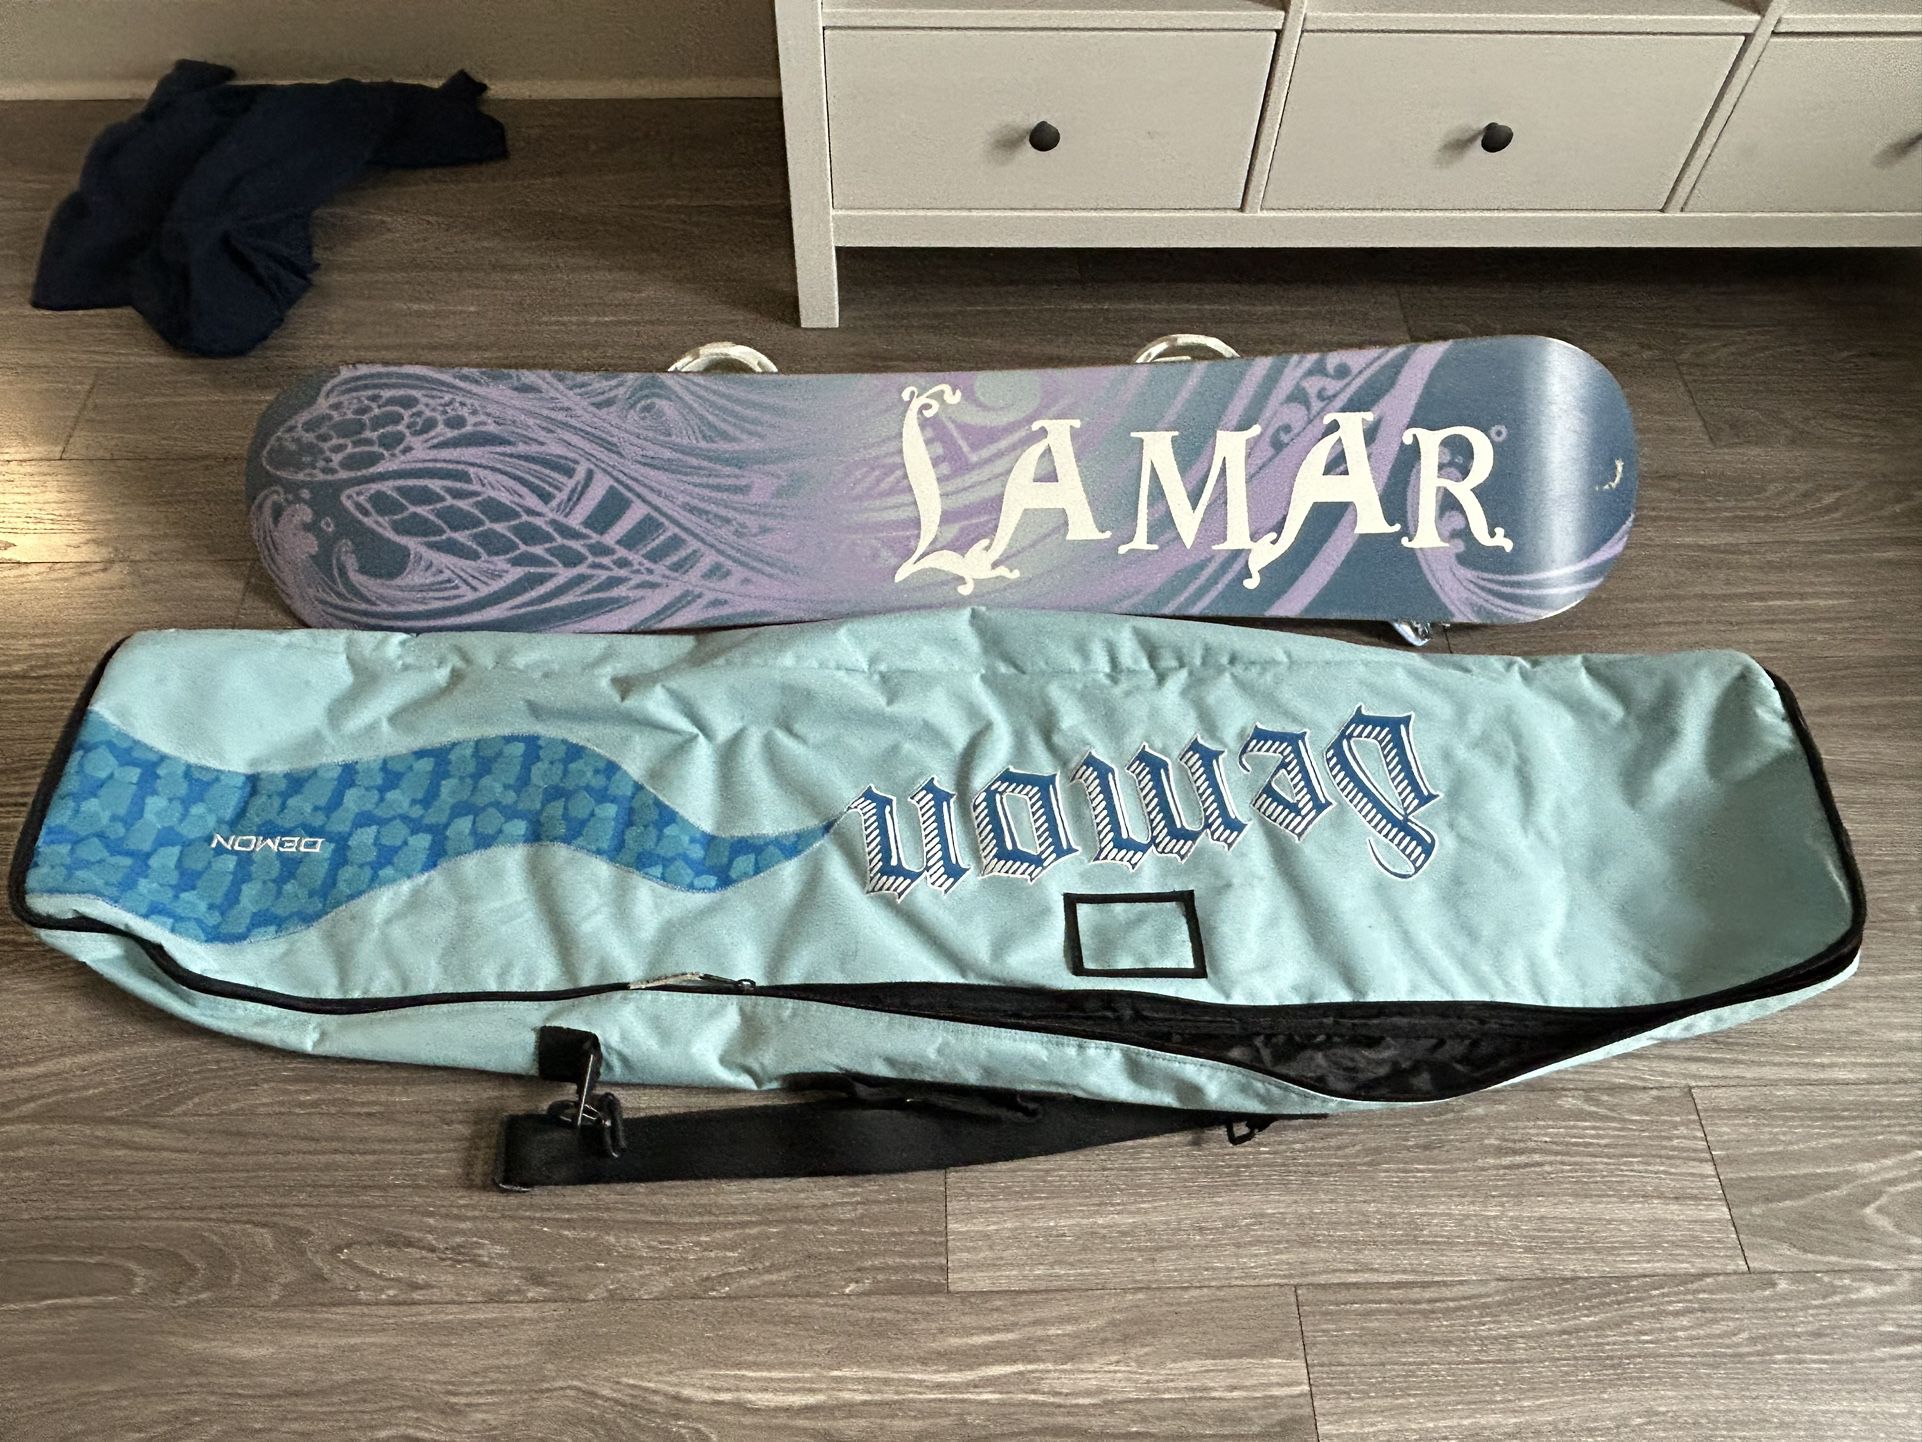 Snowboard -Lamar